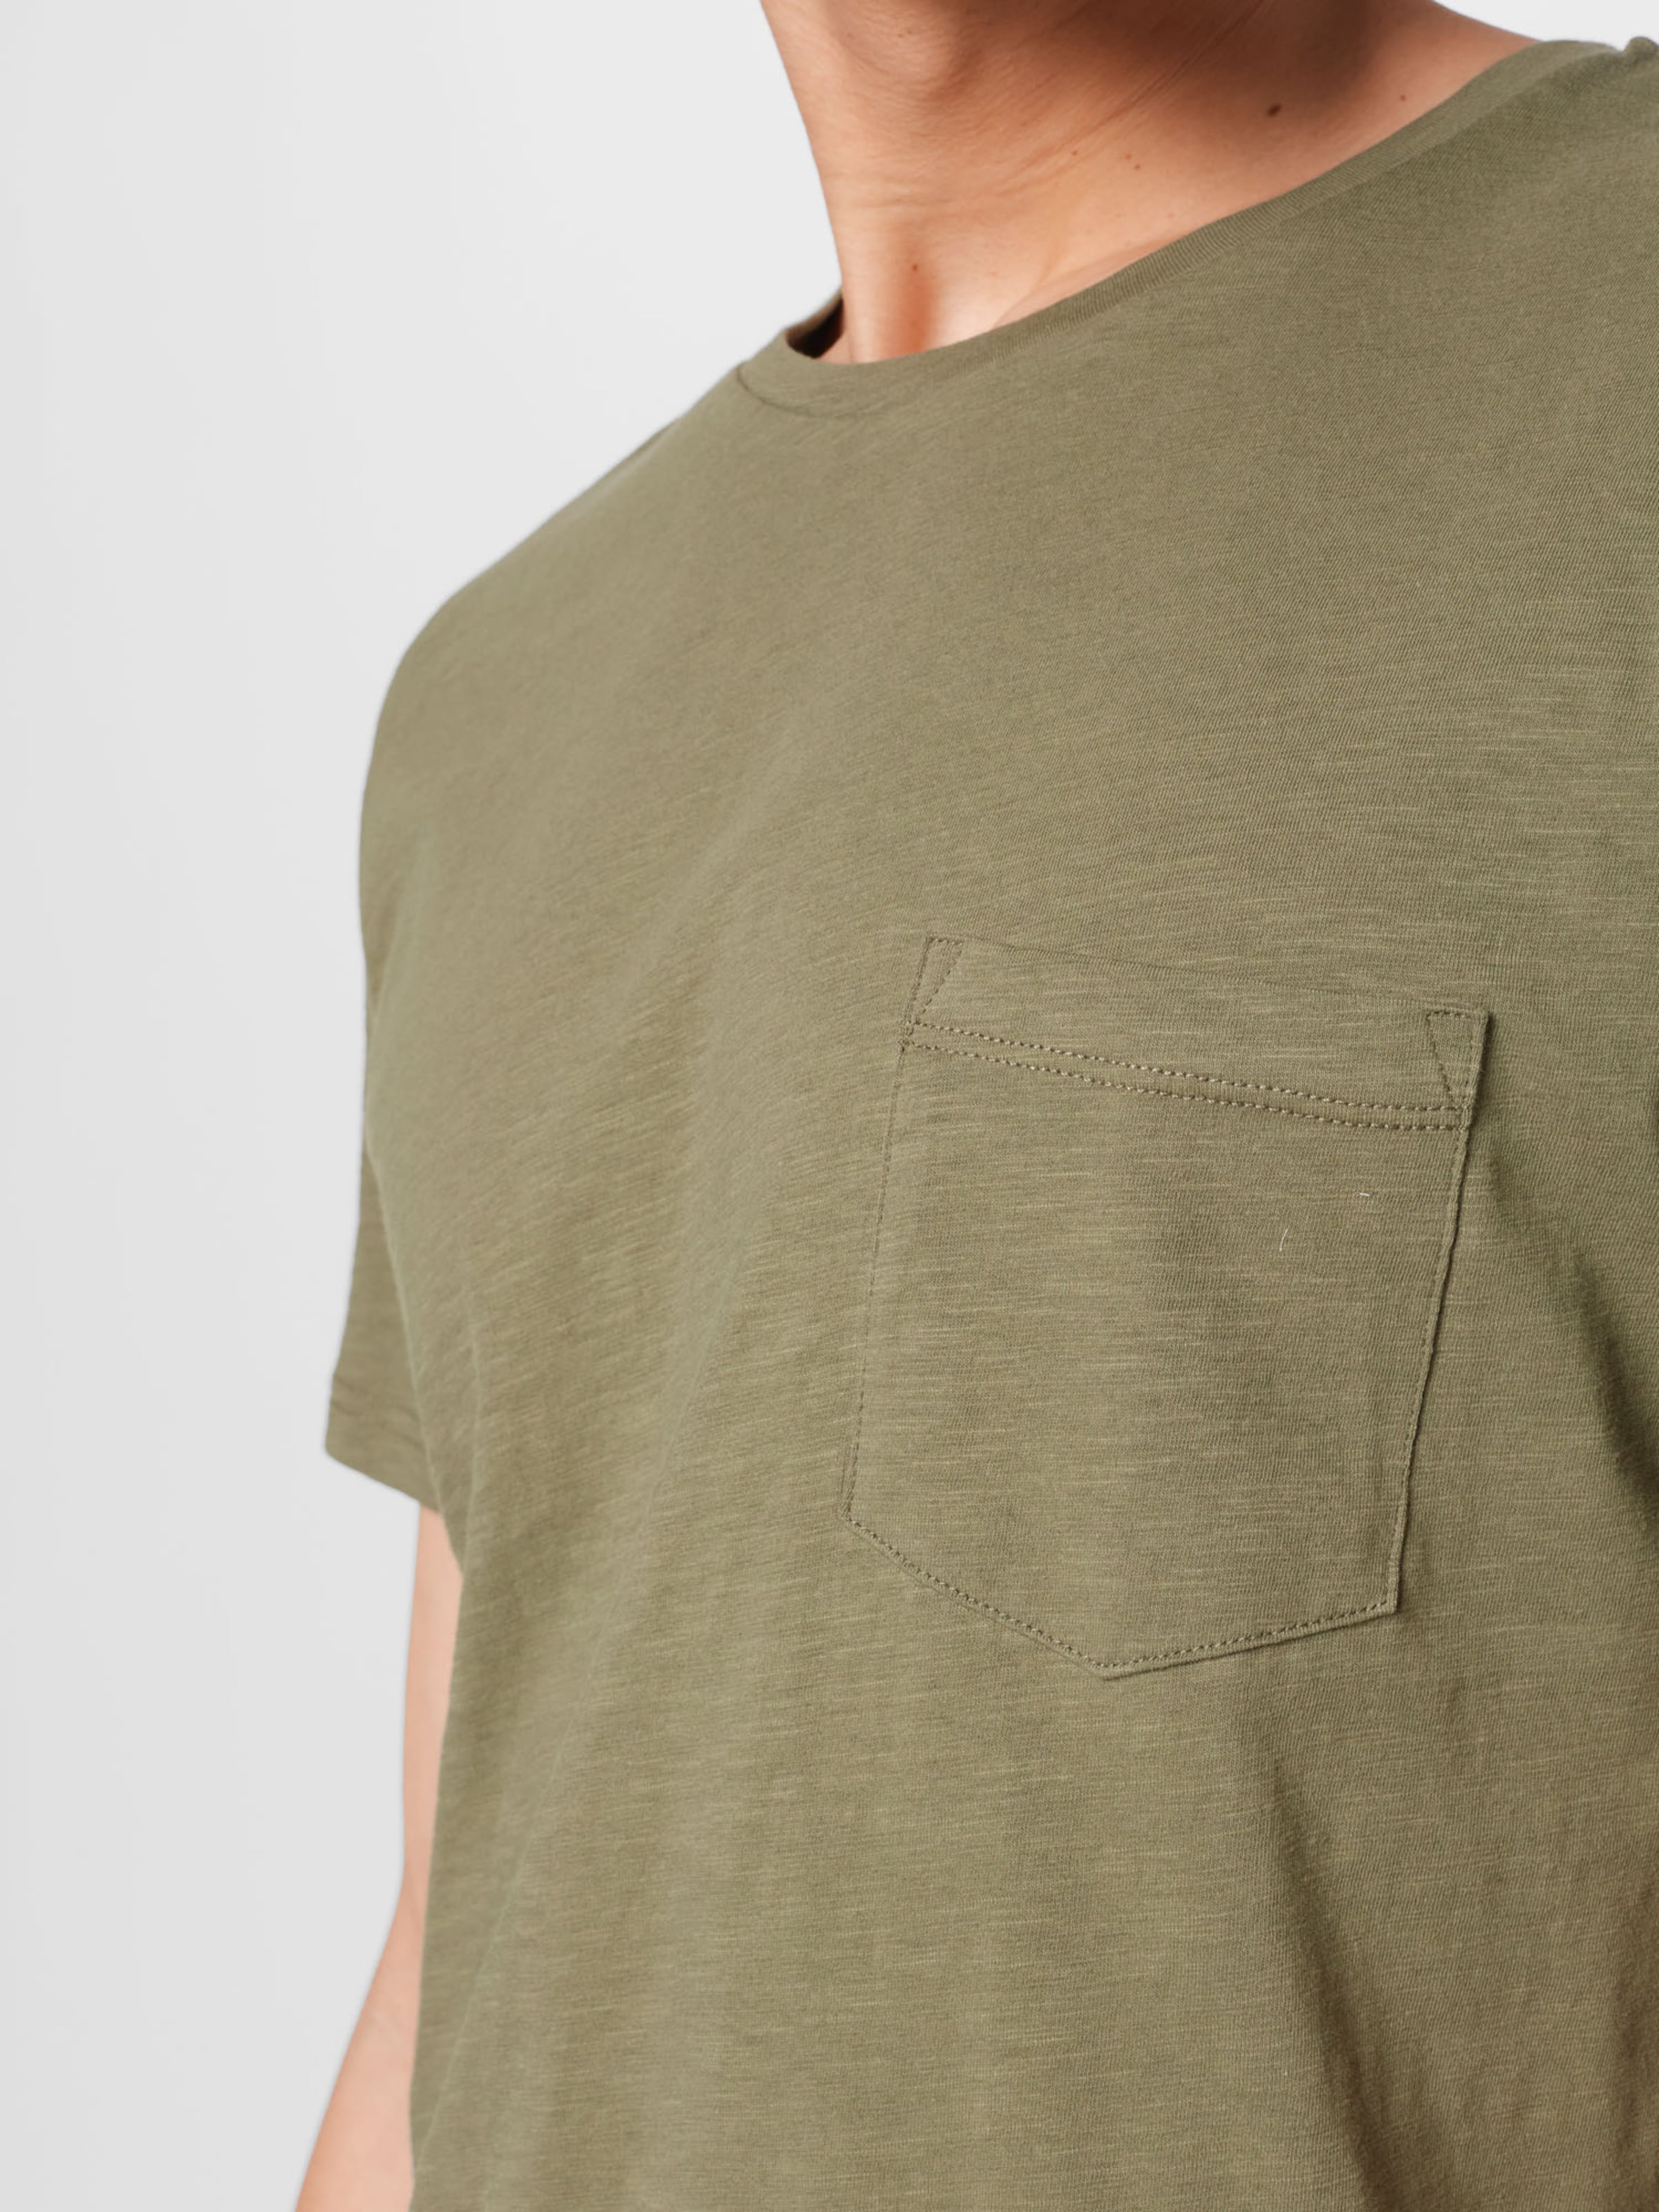 Männer Shirts By Garment Makers T-Shirt in Khaki - QM56383